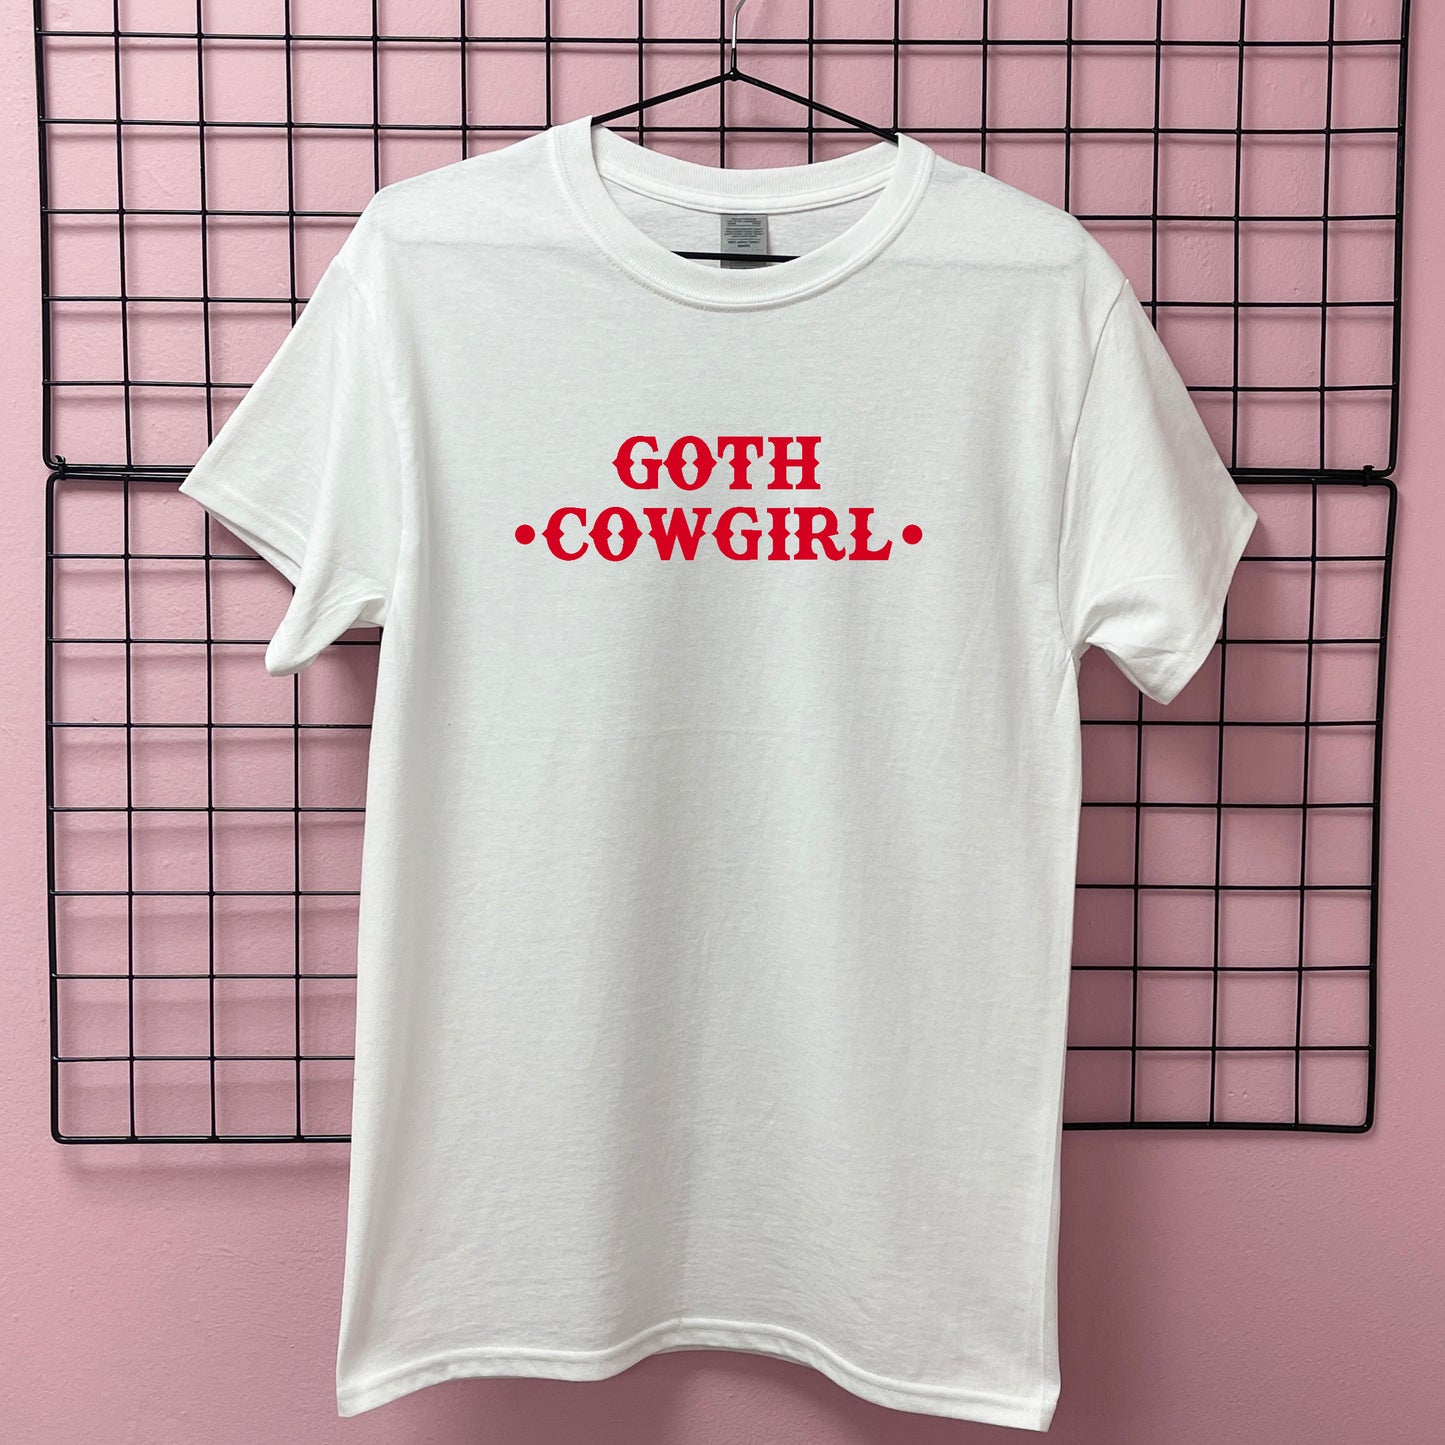 GOTH COWGIRL T-SHIRT